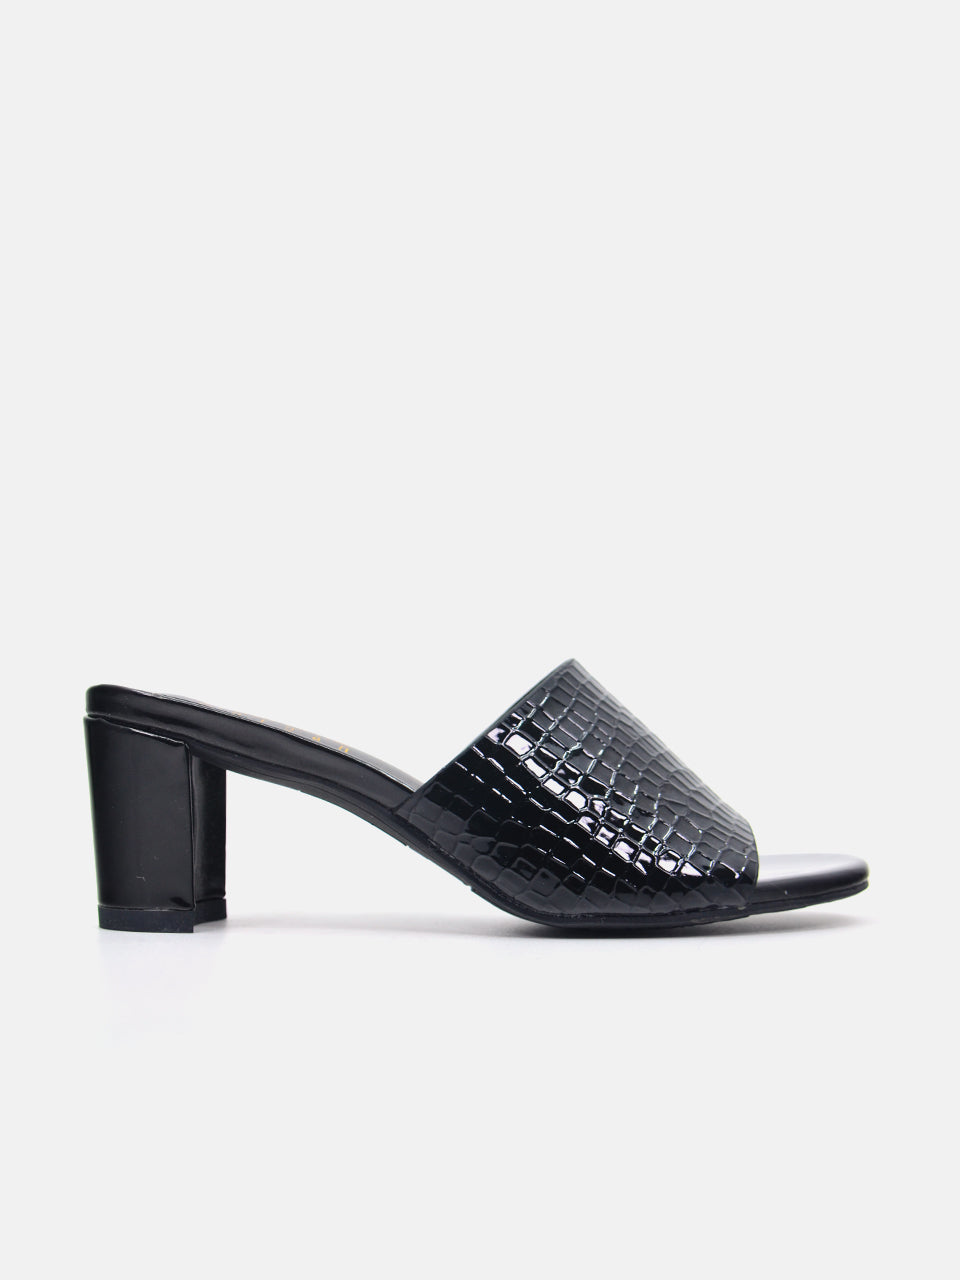 Michelle Morgan 914RJ191 Women's Heeled Sandals #color_Black